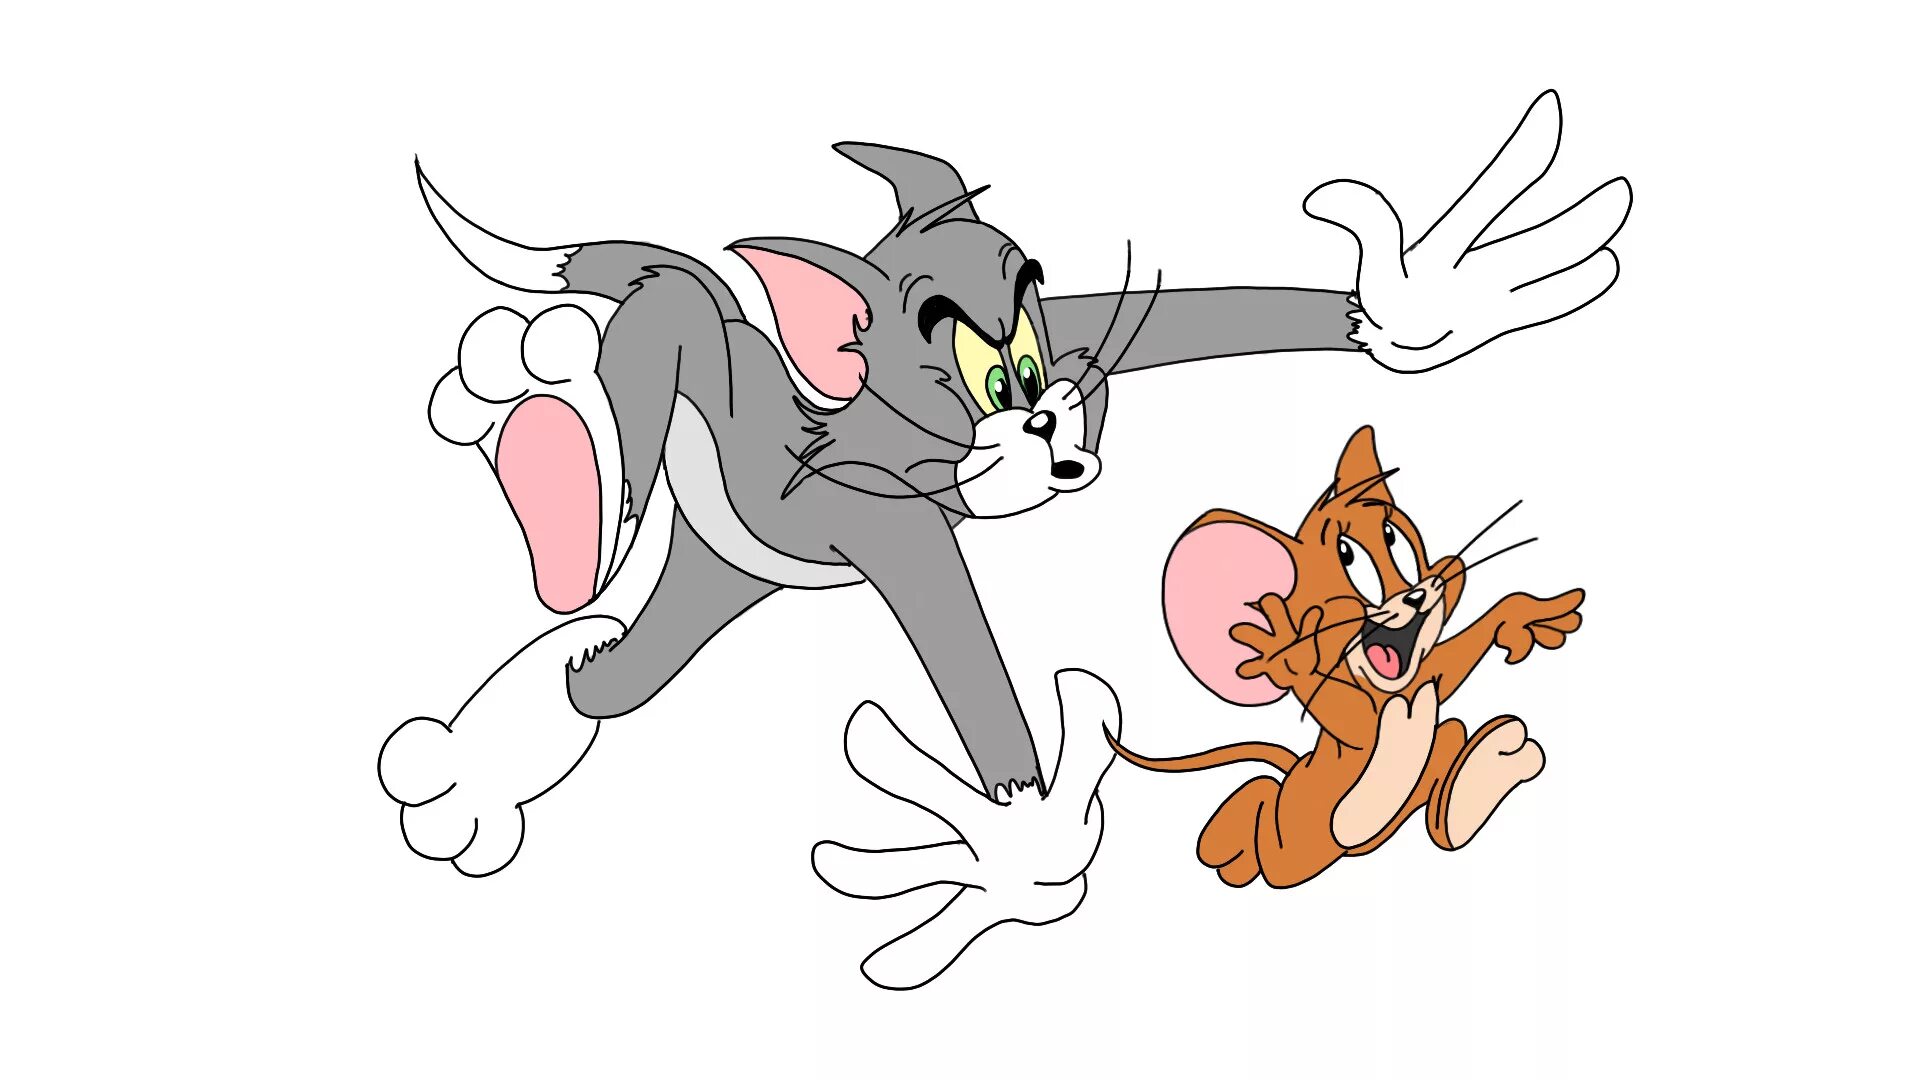 Том и. Tom and Jerry. Мультяшные том и Джерри. Герои мультфильма том и Джерри. М/С «том и Джерри» 0+.